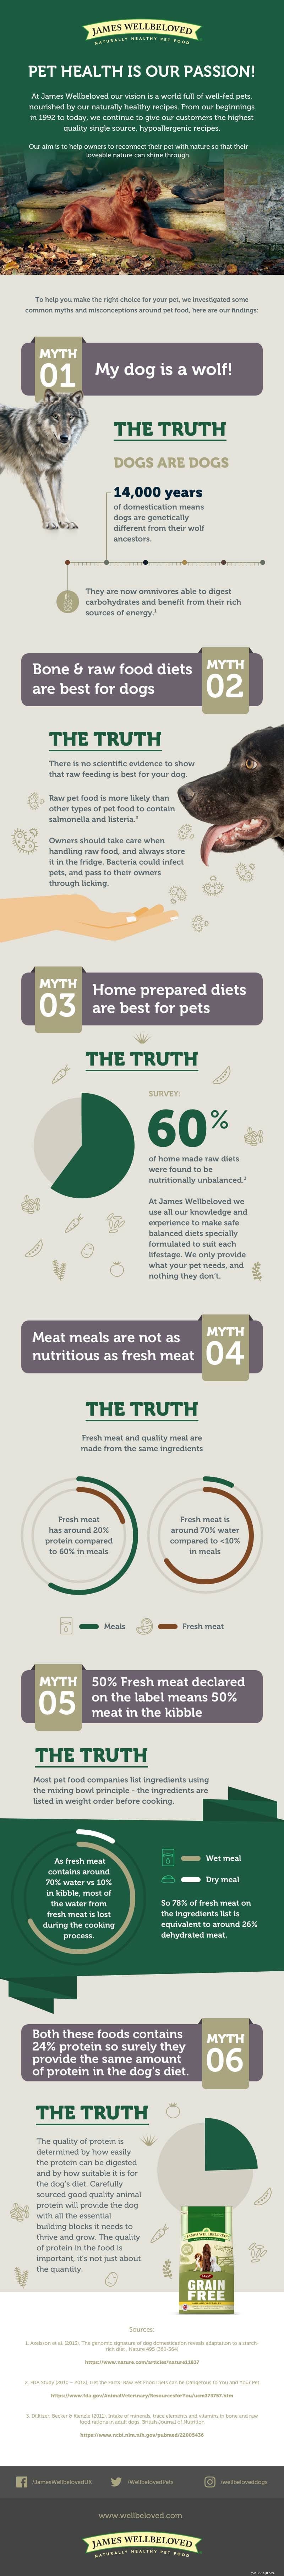 Mitos e verdades sobre a alimentação dos cães